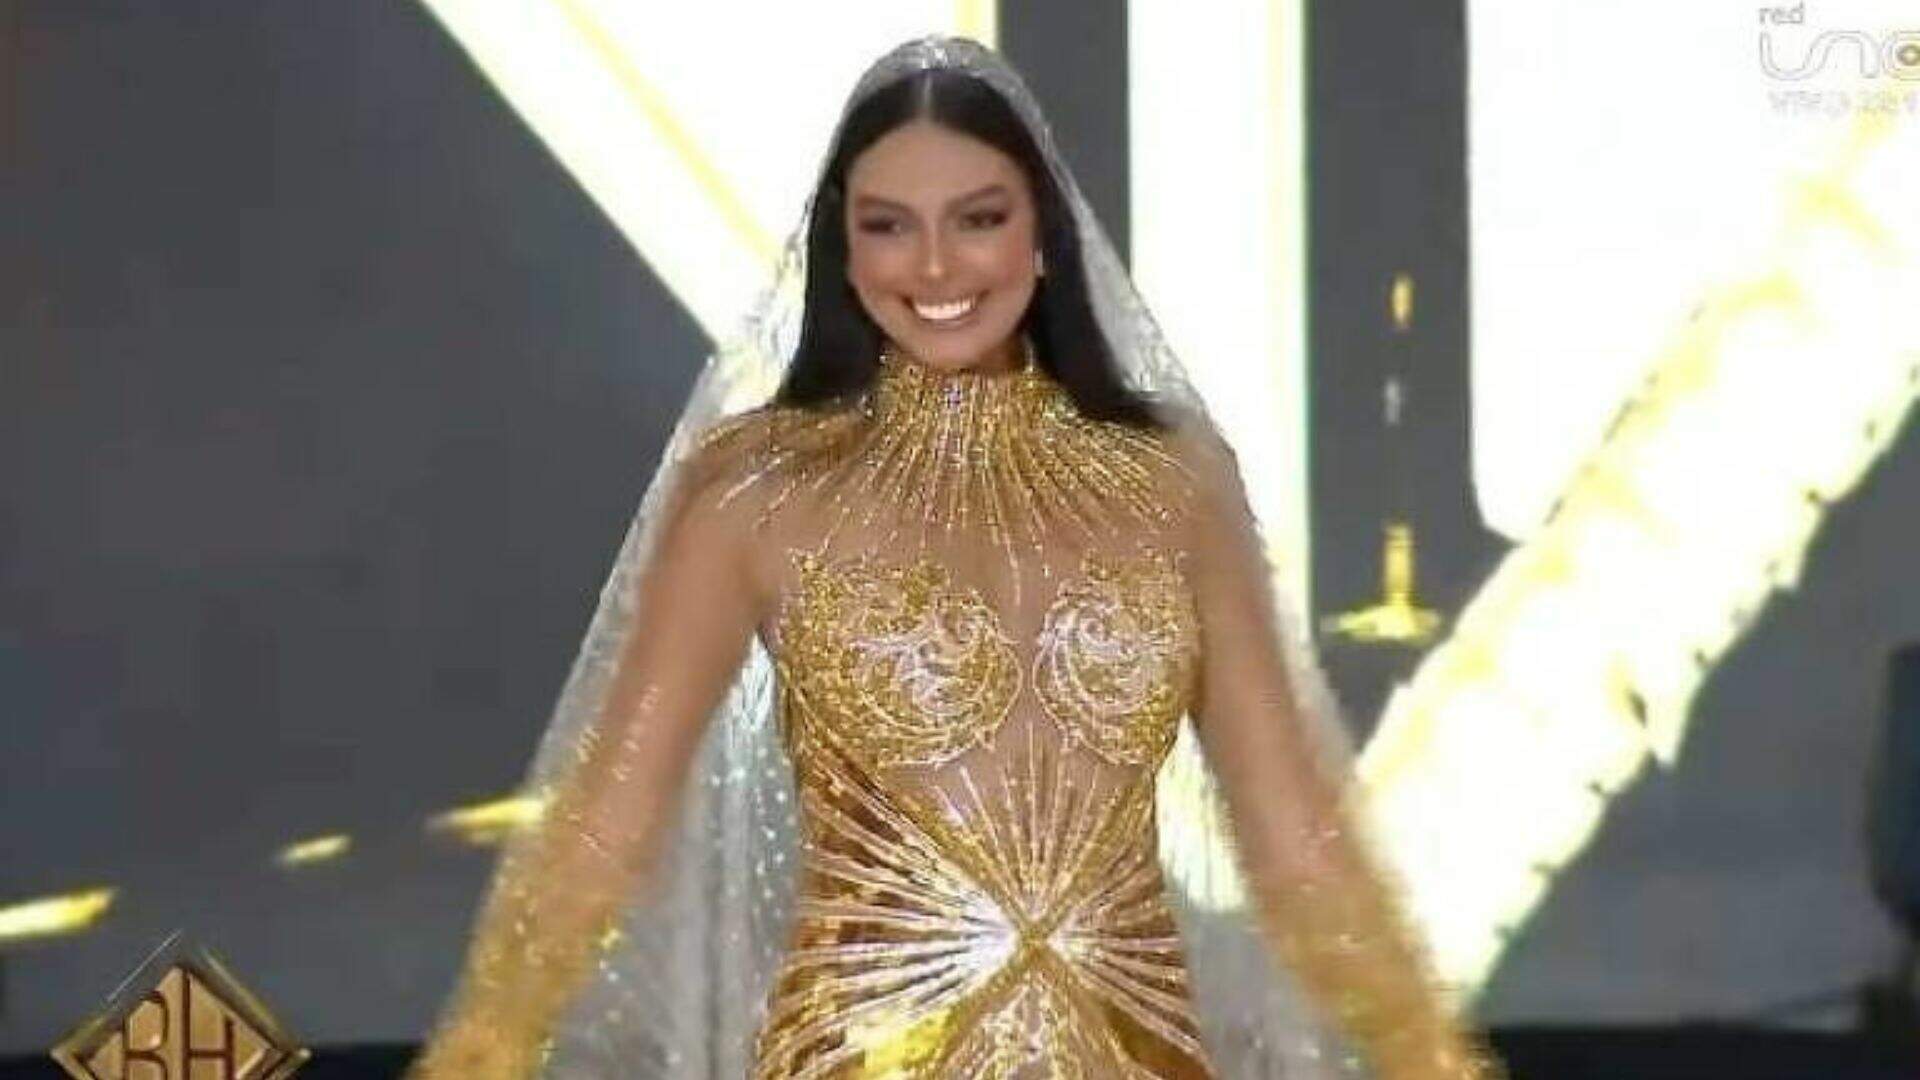 Miss Brasil usa vestido inspirado em Nossa Senhora Aparecida para concurso mundial e web reage: “Obra de arte” - Metropolitana FM